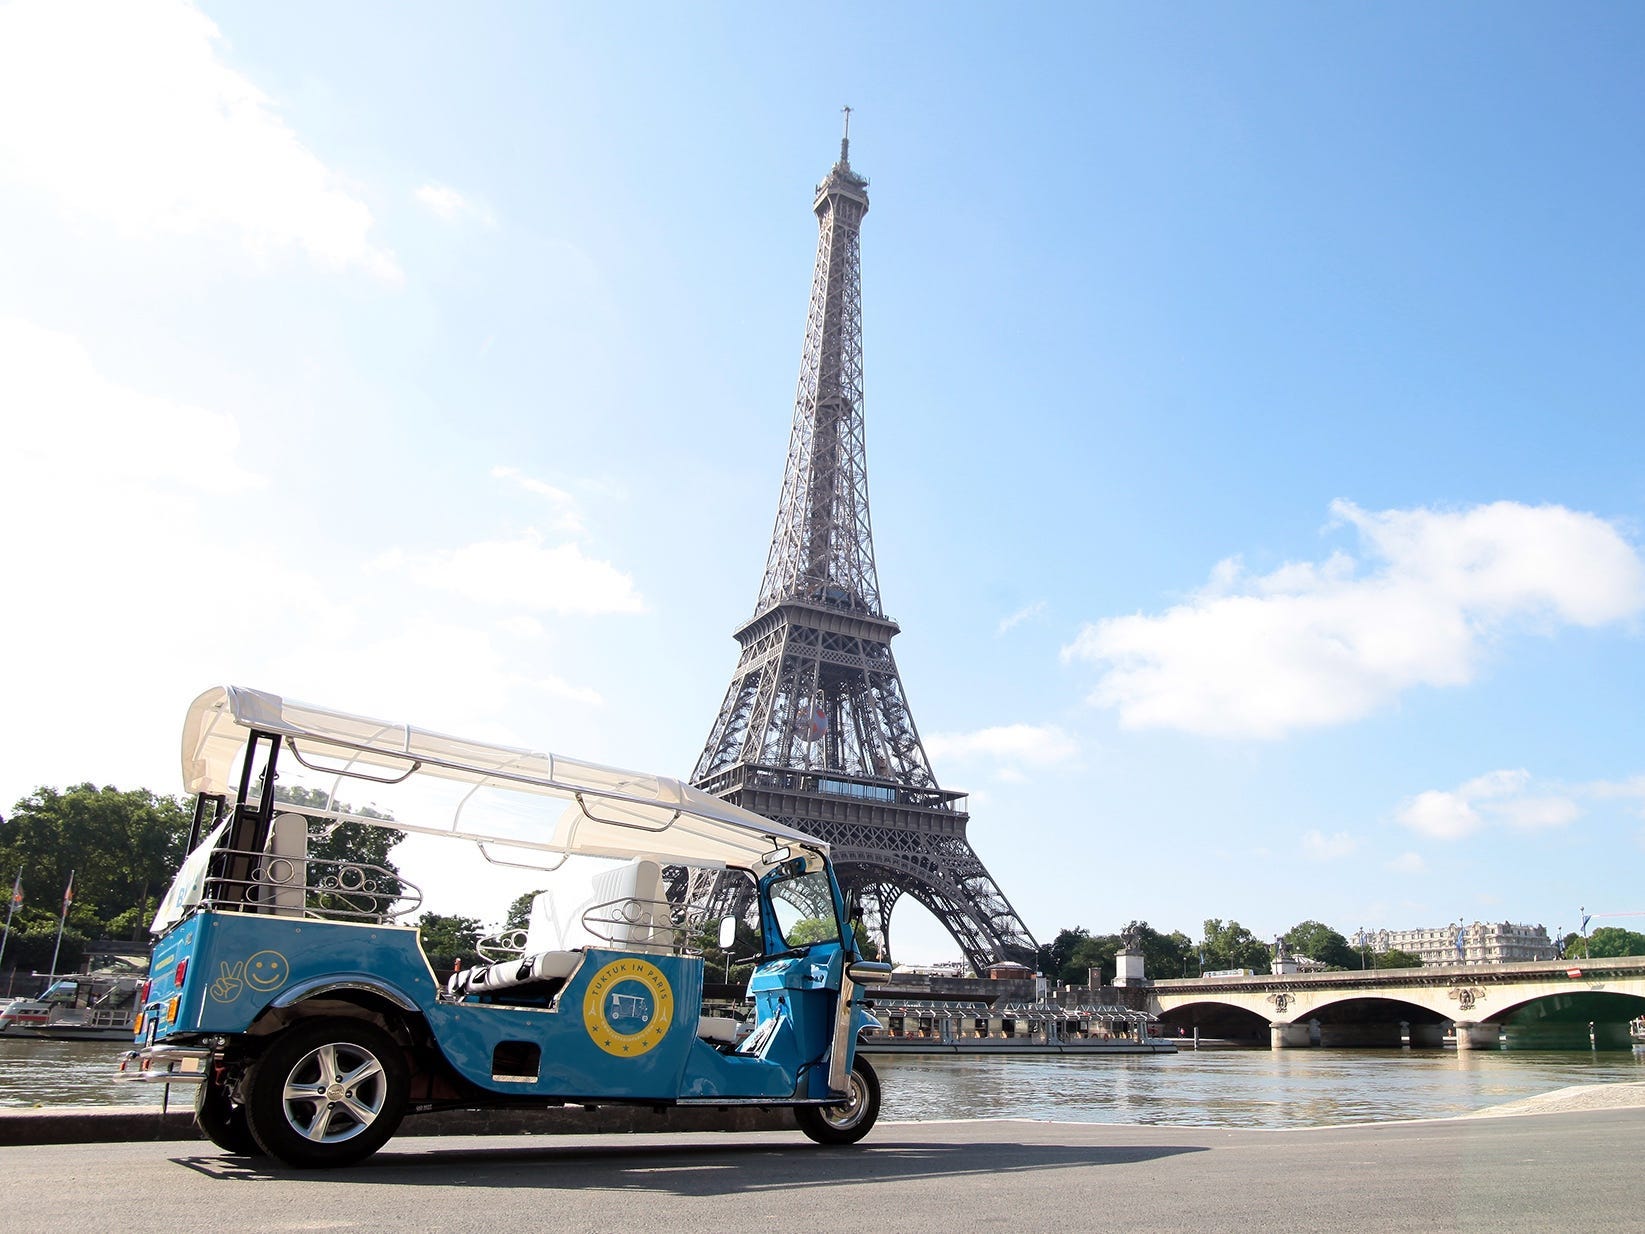 Vor dem Eiffelturm parkt ein kleines, blaues Gefährt, ähnlich einem Golfcart